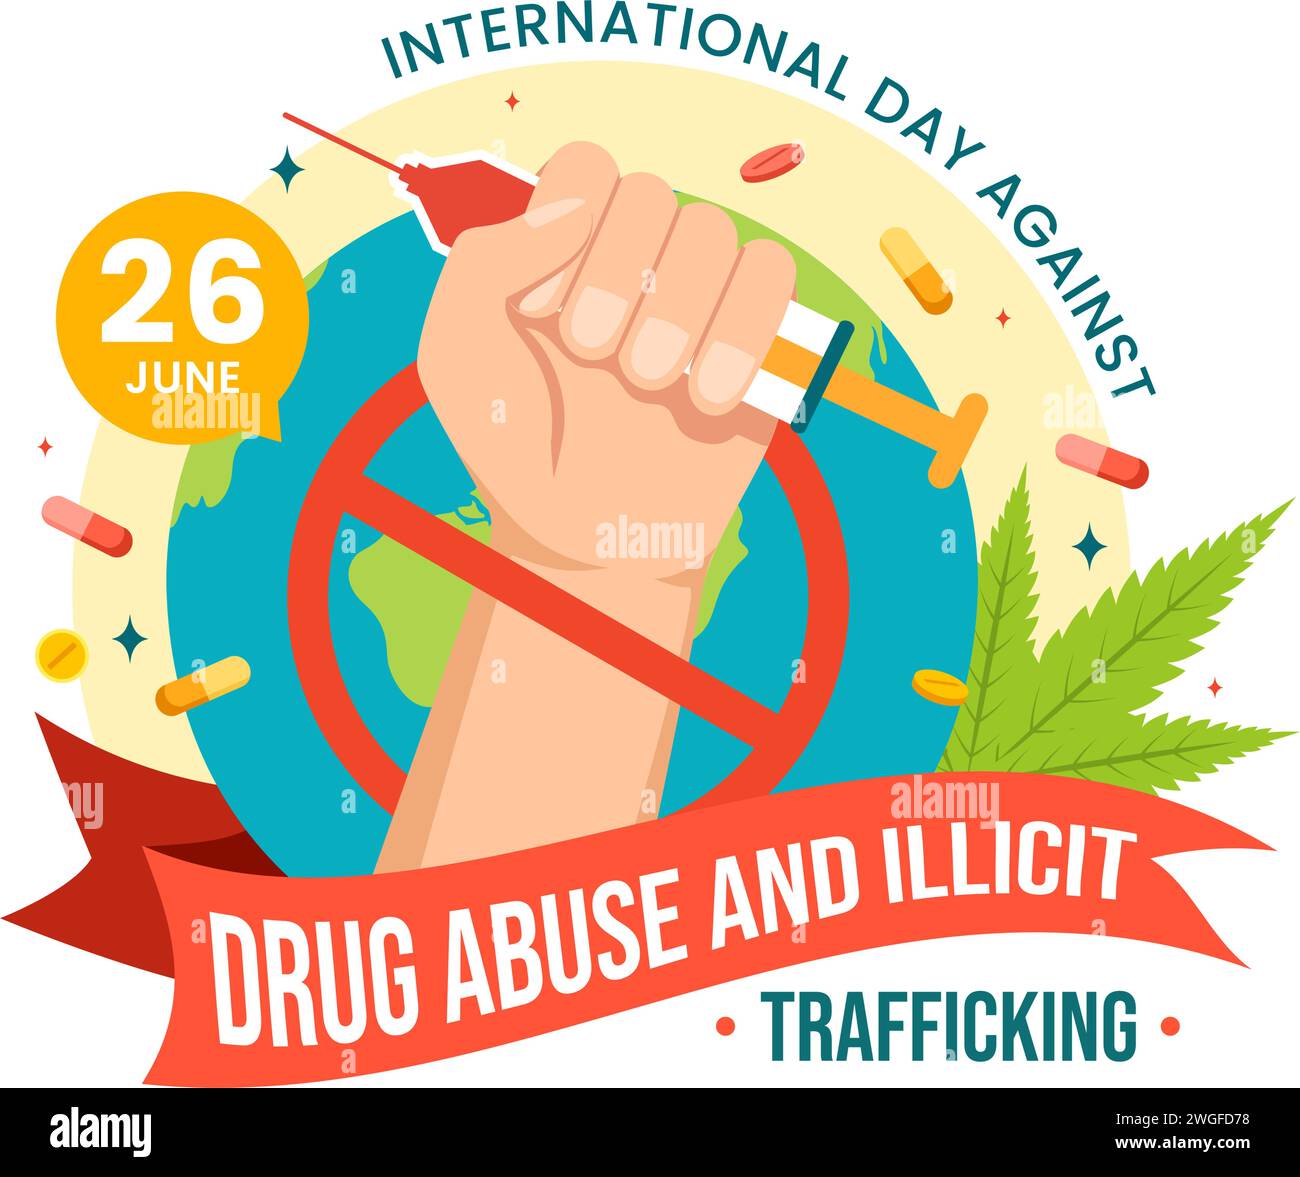 Journée internationale contre l'abus et le trafic illicite de drogues Illustration vectorielle avec anti-stupéfiants pour éviter les drogues et les médicaments en fond plat Illustration de Vecteur